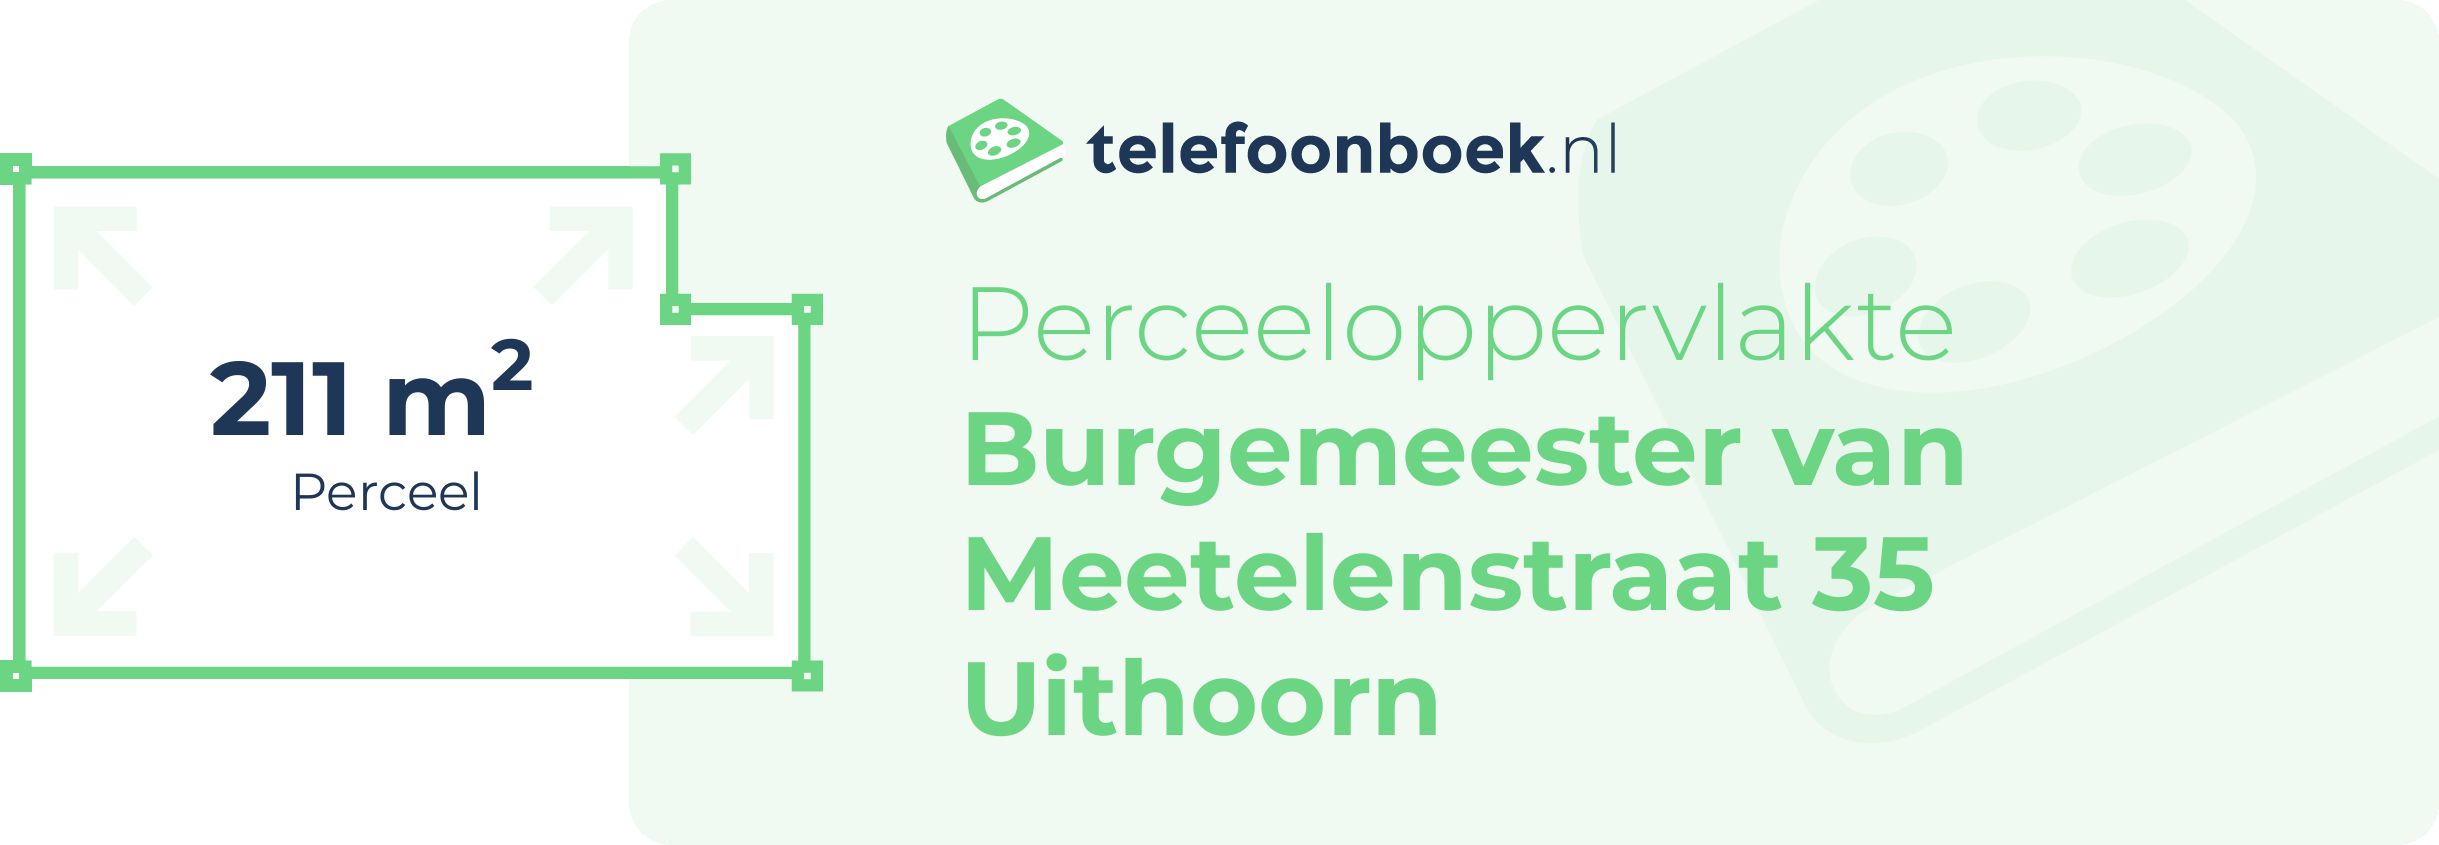 Perceeloppervlakte Burgemeester Van Meetelenstraat 35 Uithoorn